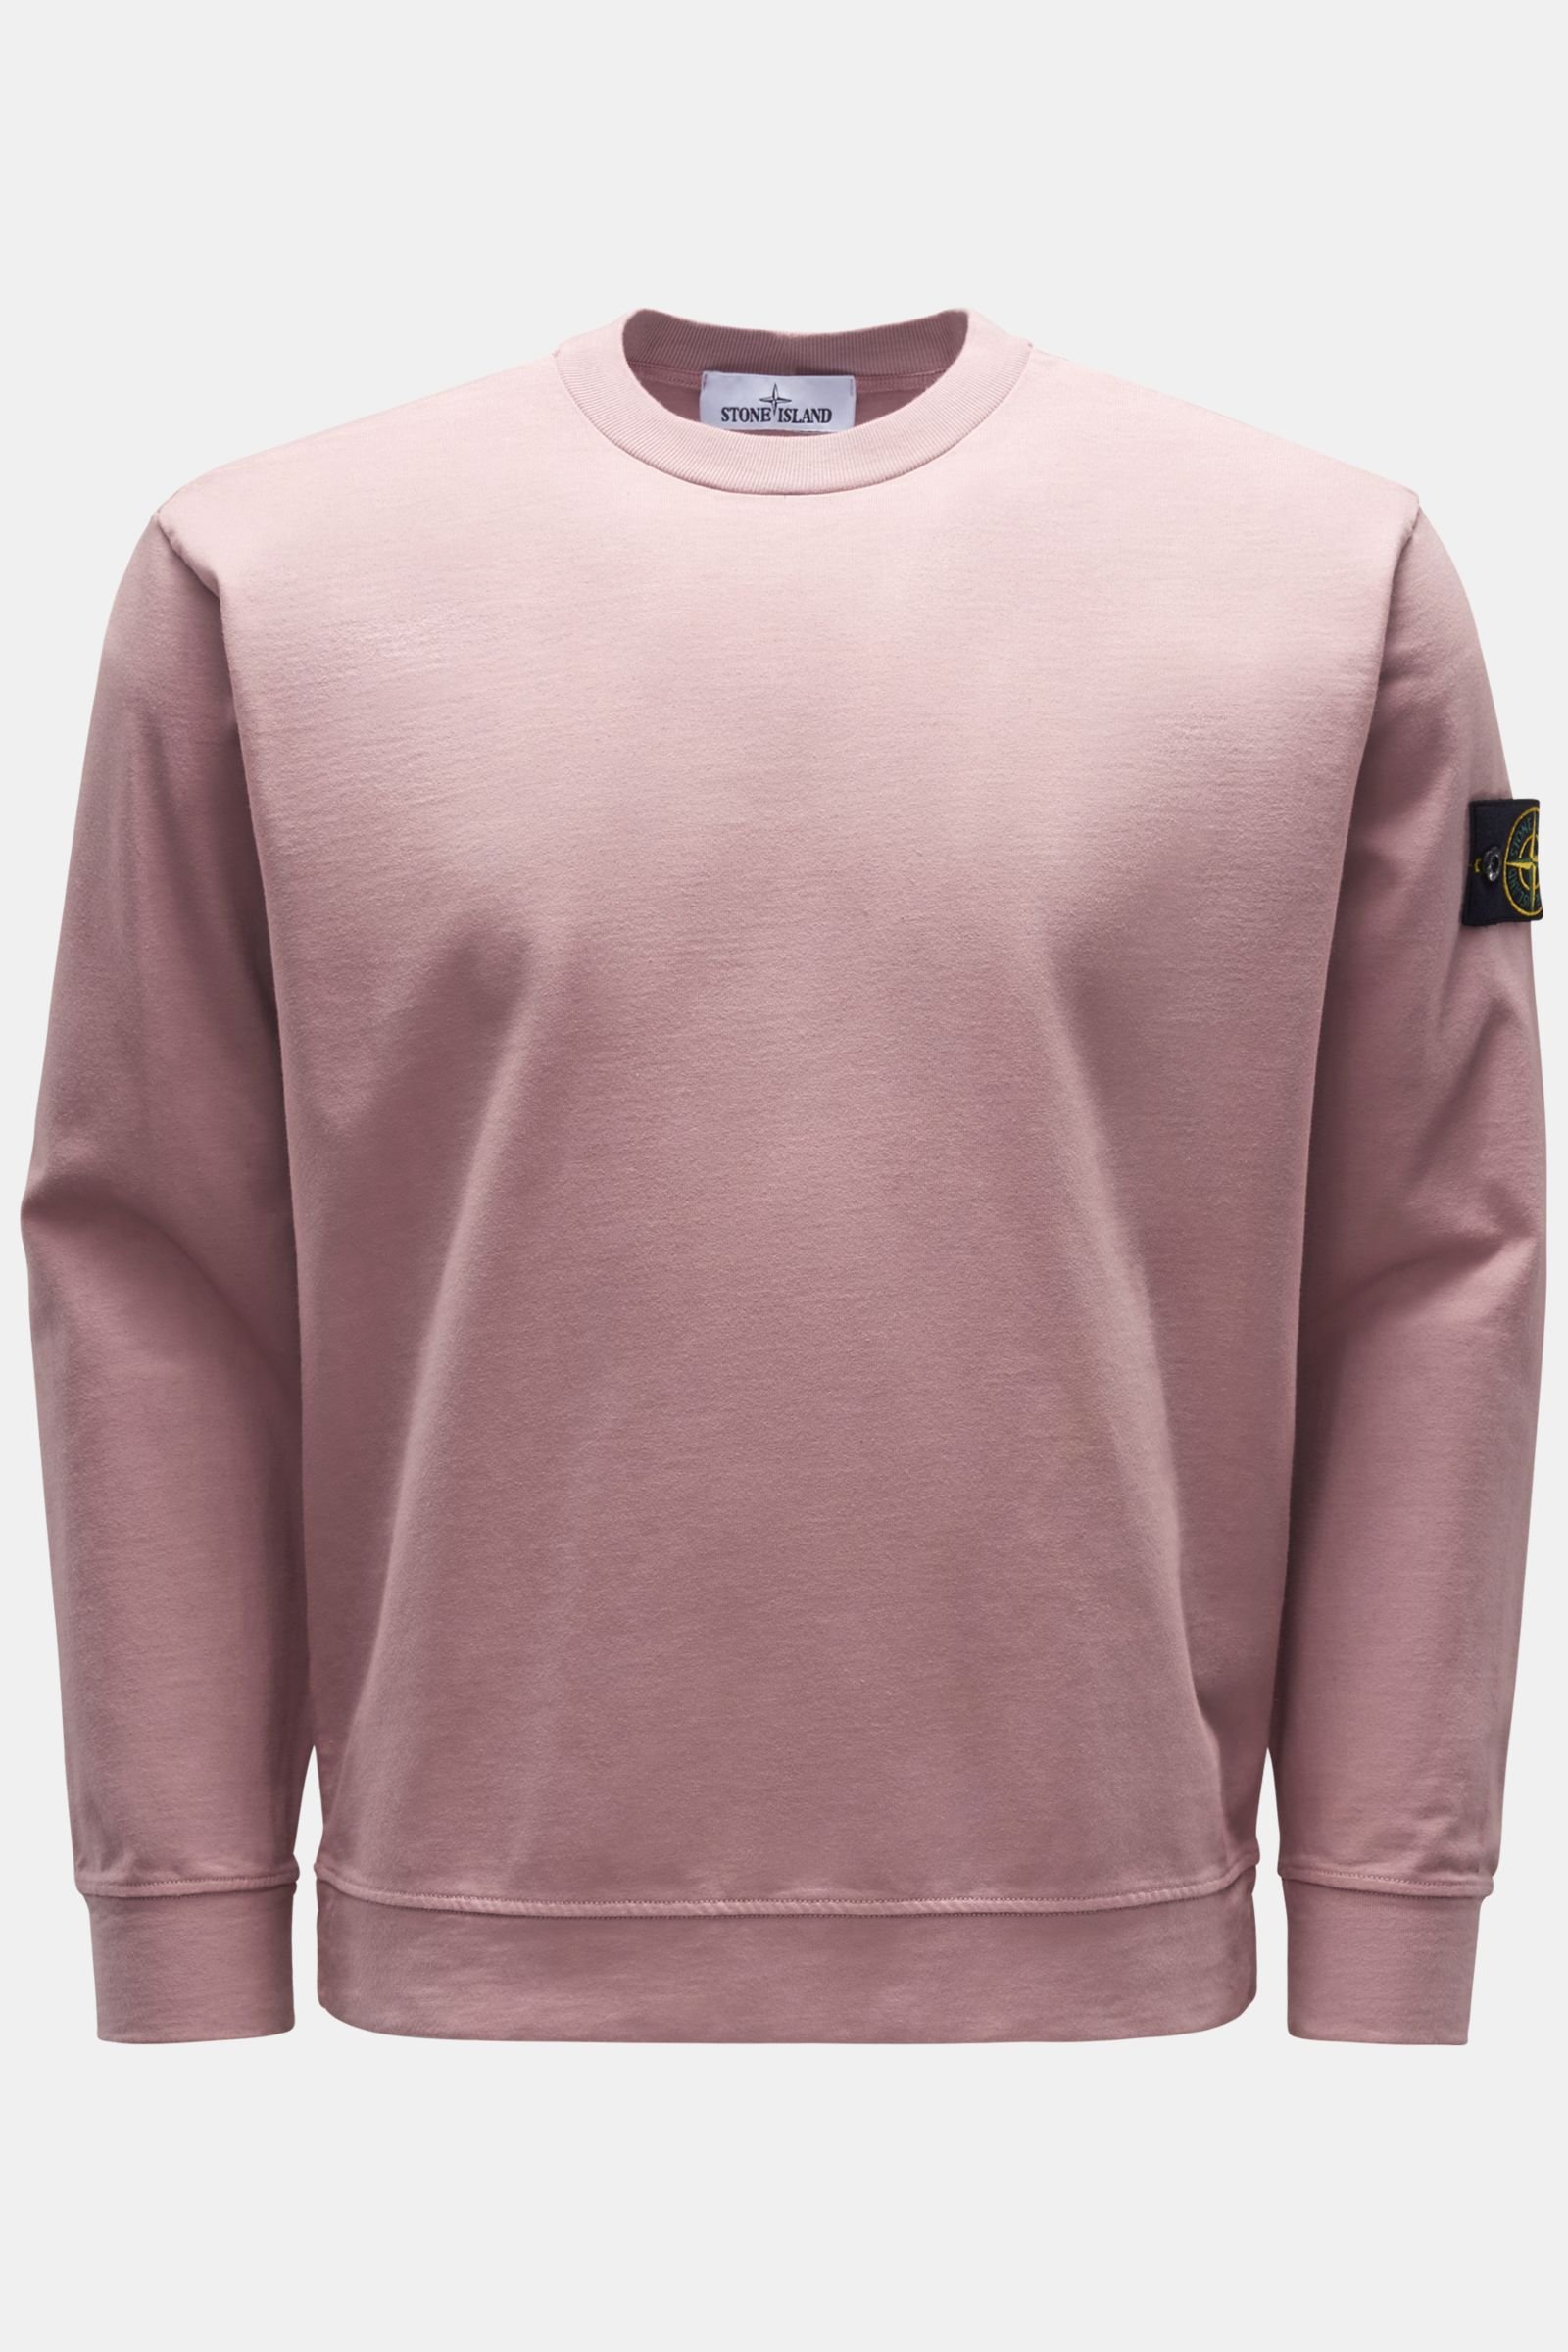 Crew neck sweatshirt antique pink